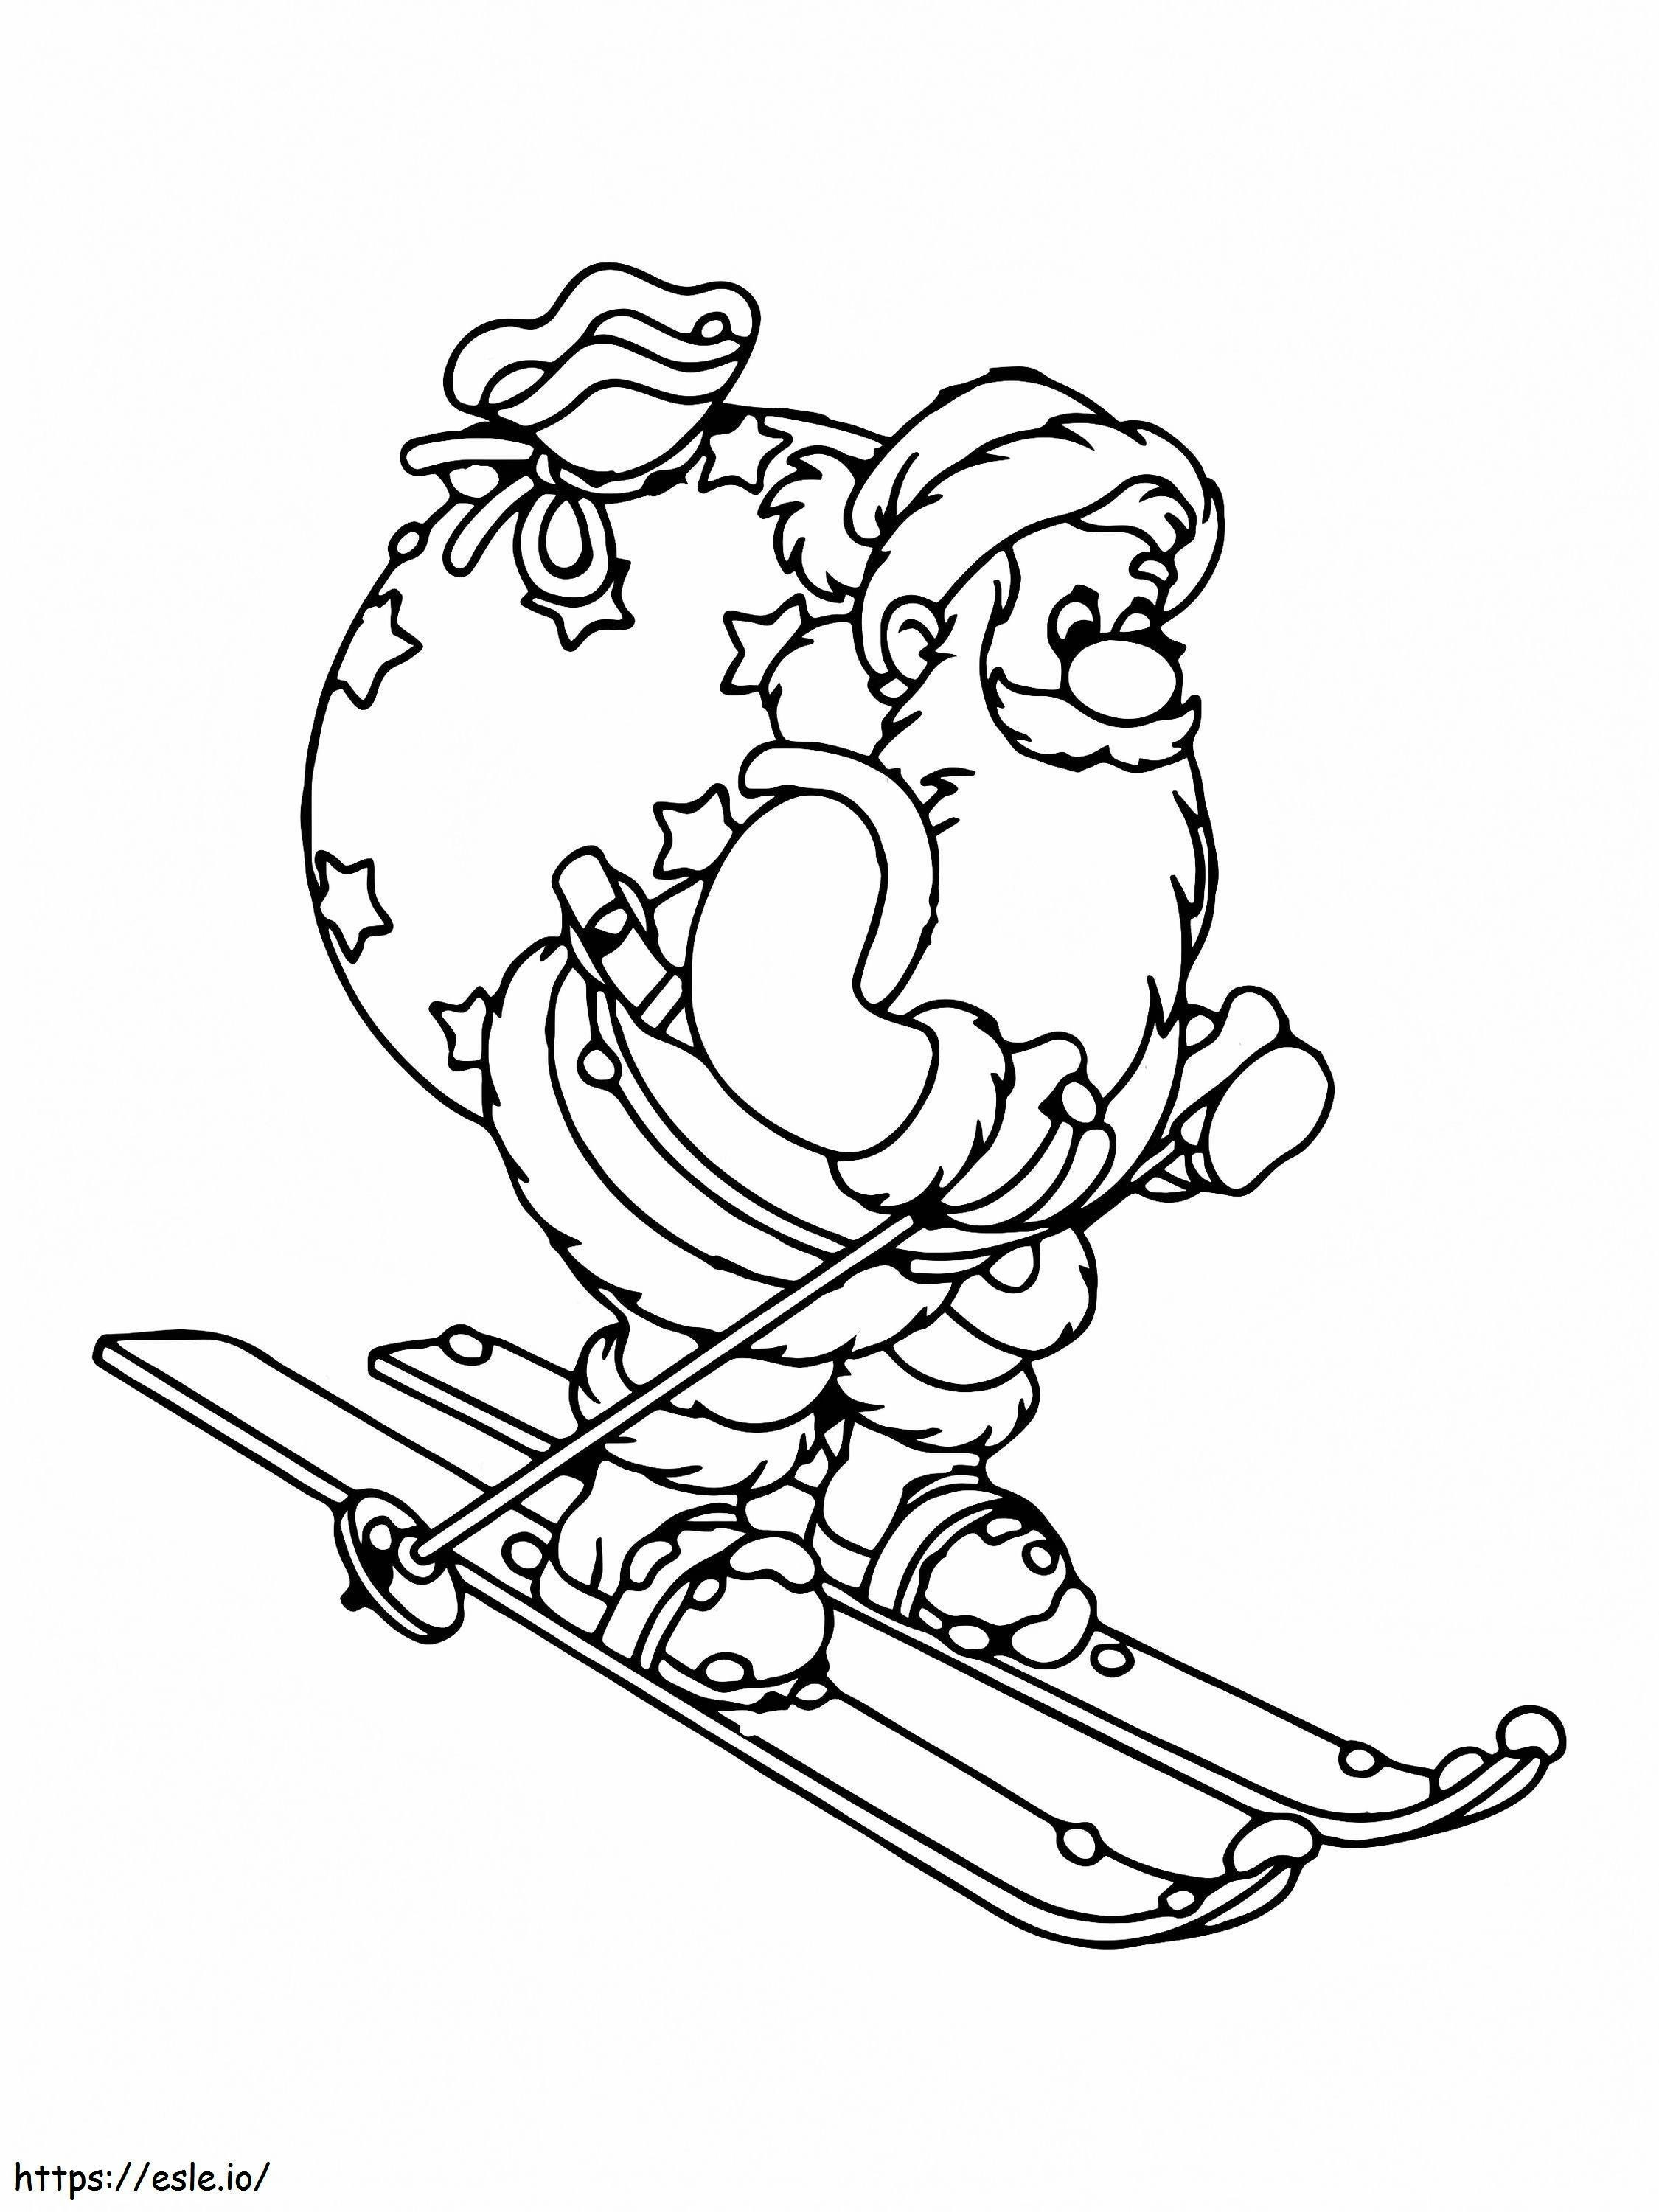 Der Weihnachtsmann beim Skifahren ausmalbilder